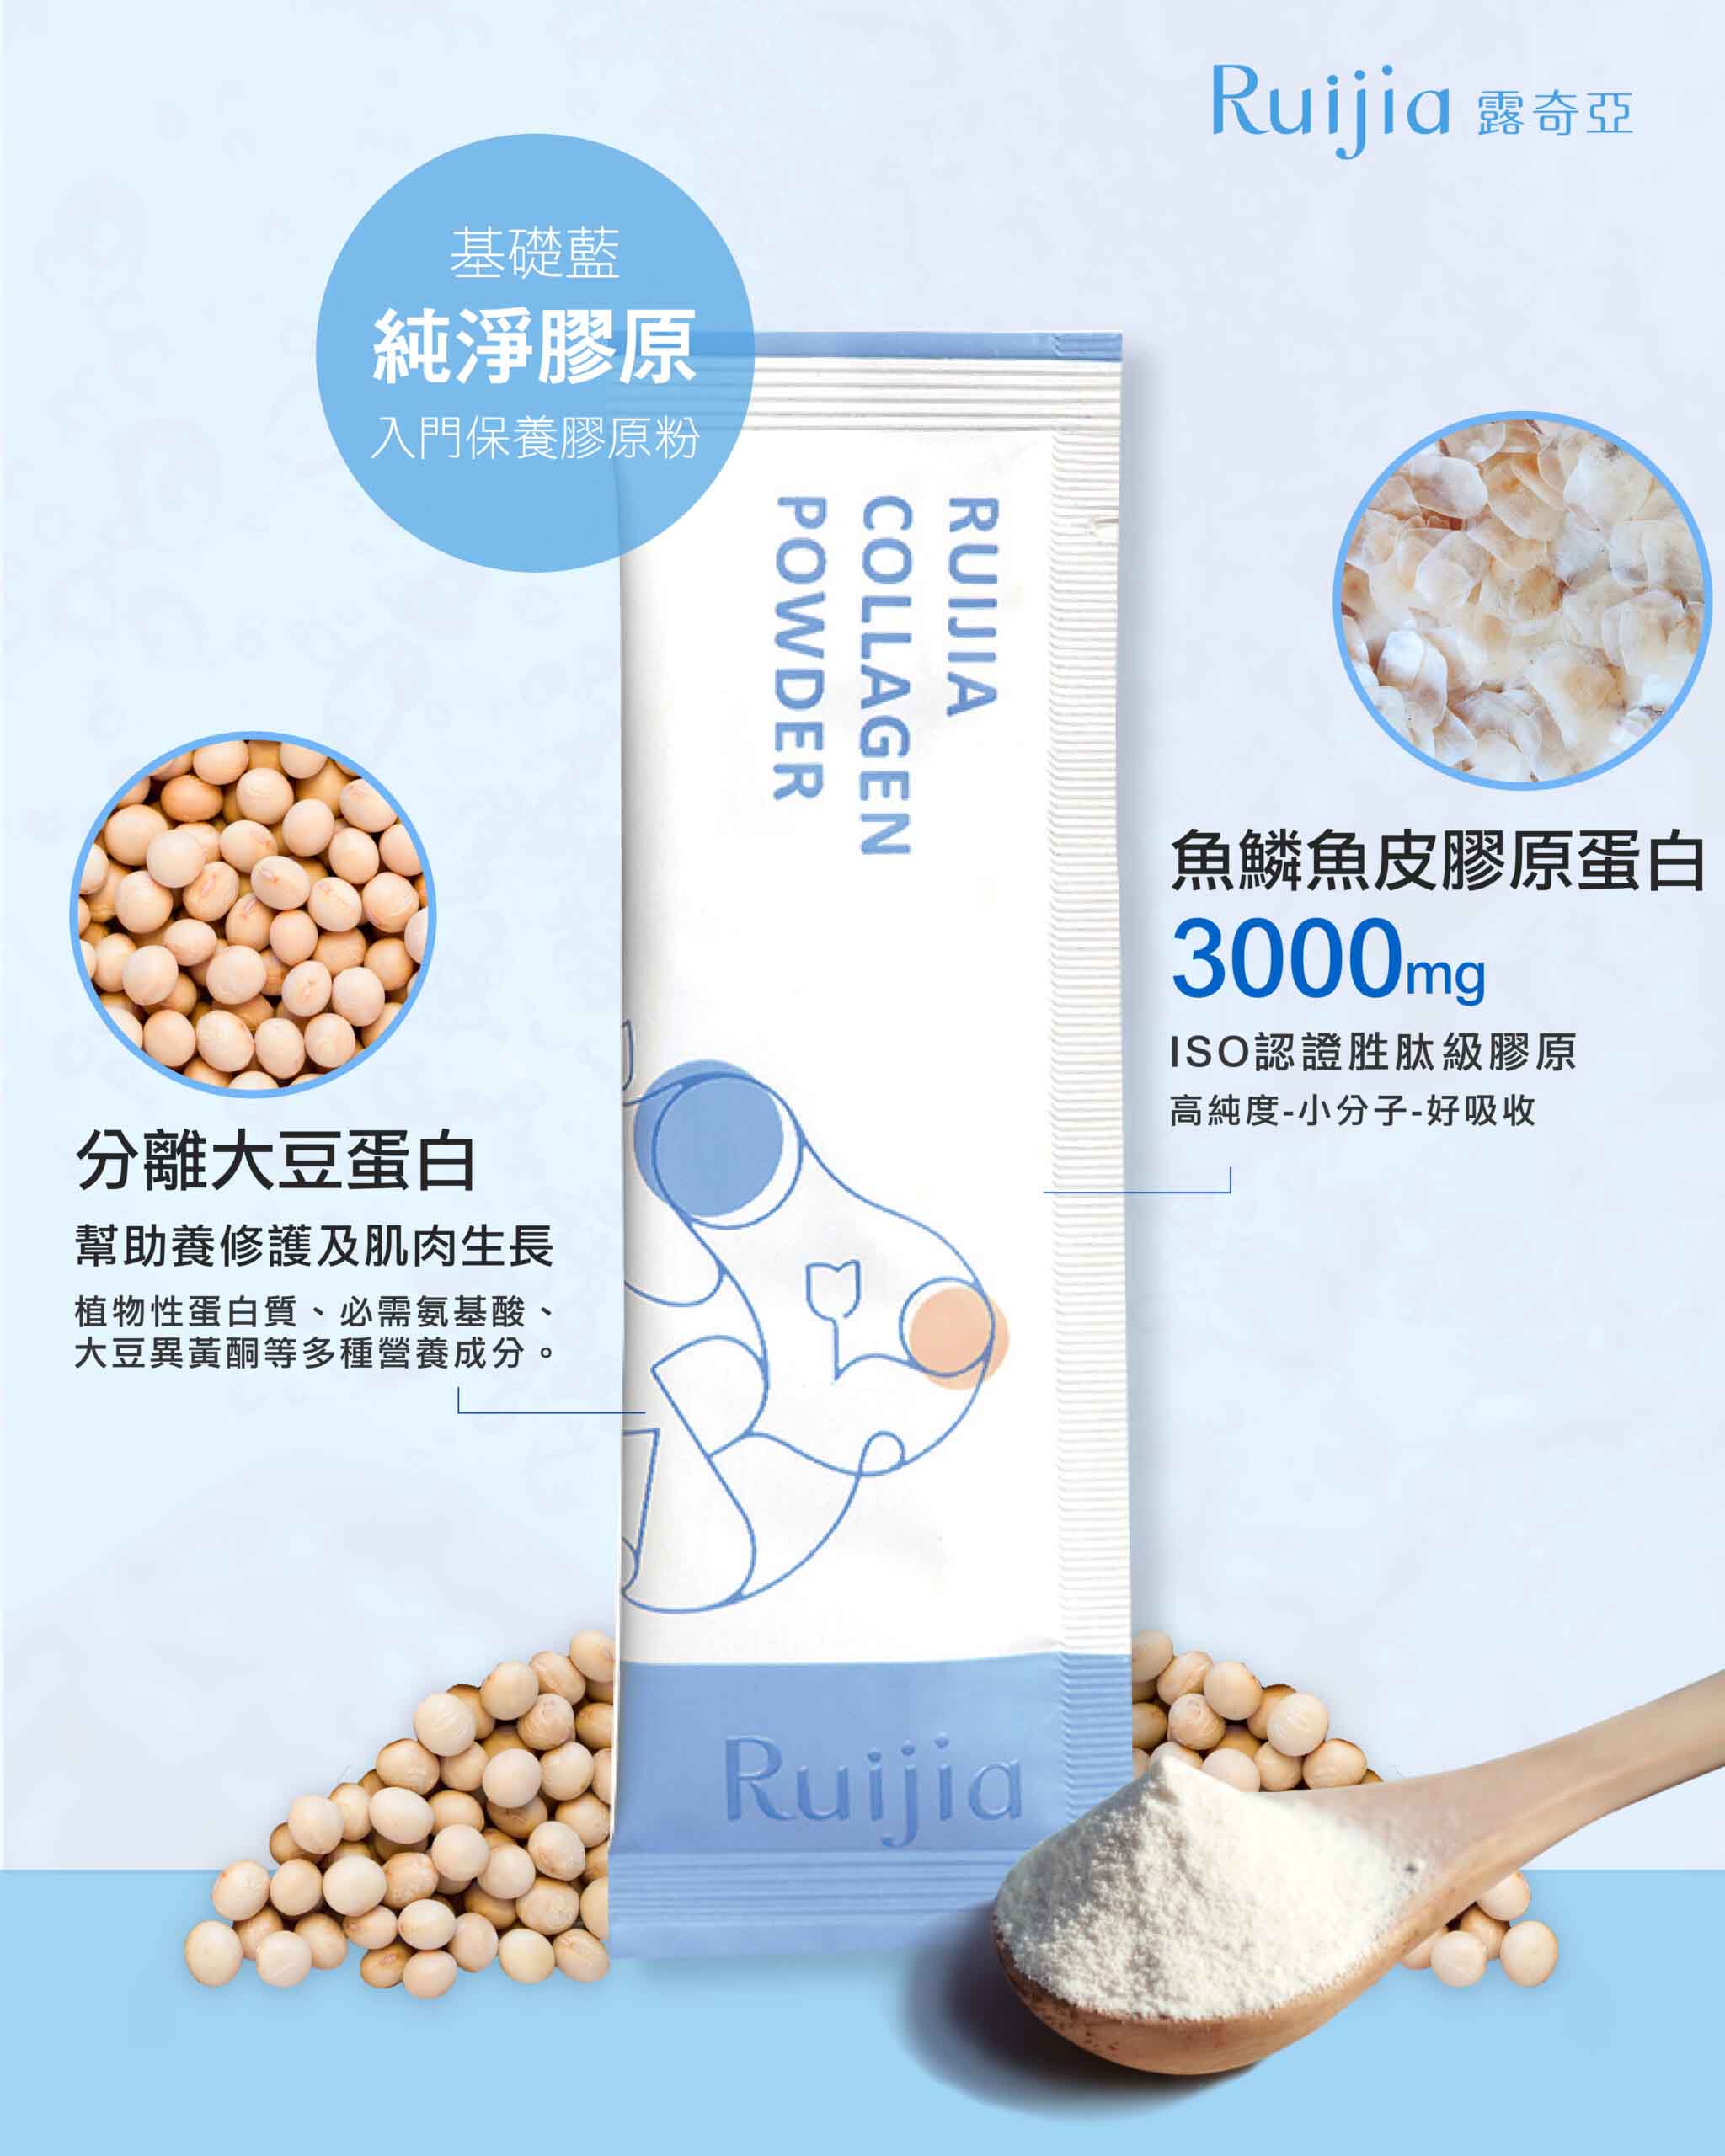 ruijia collagen powder composition